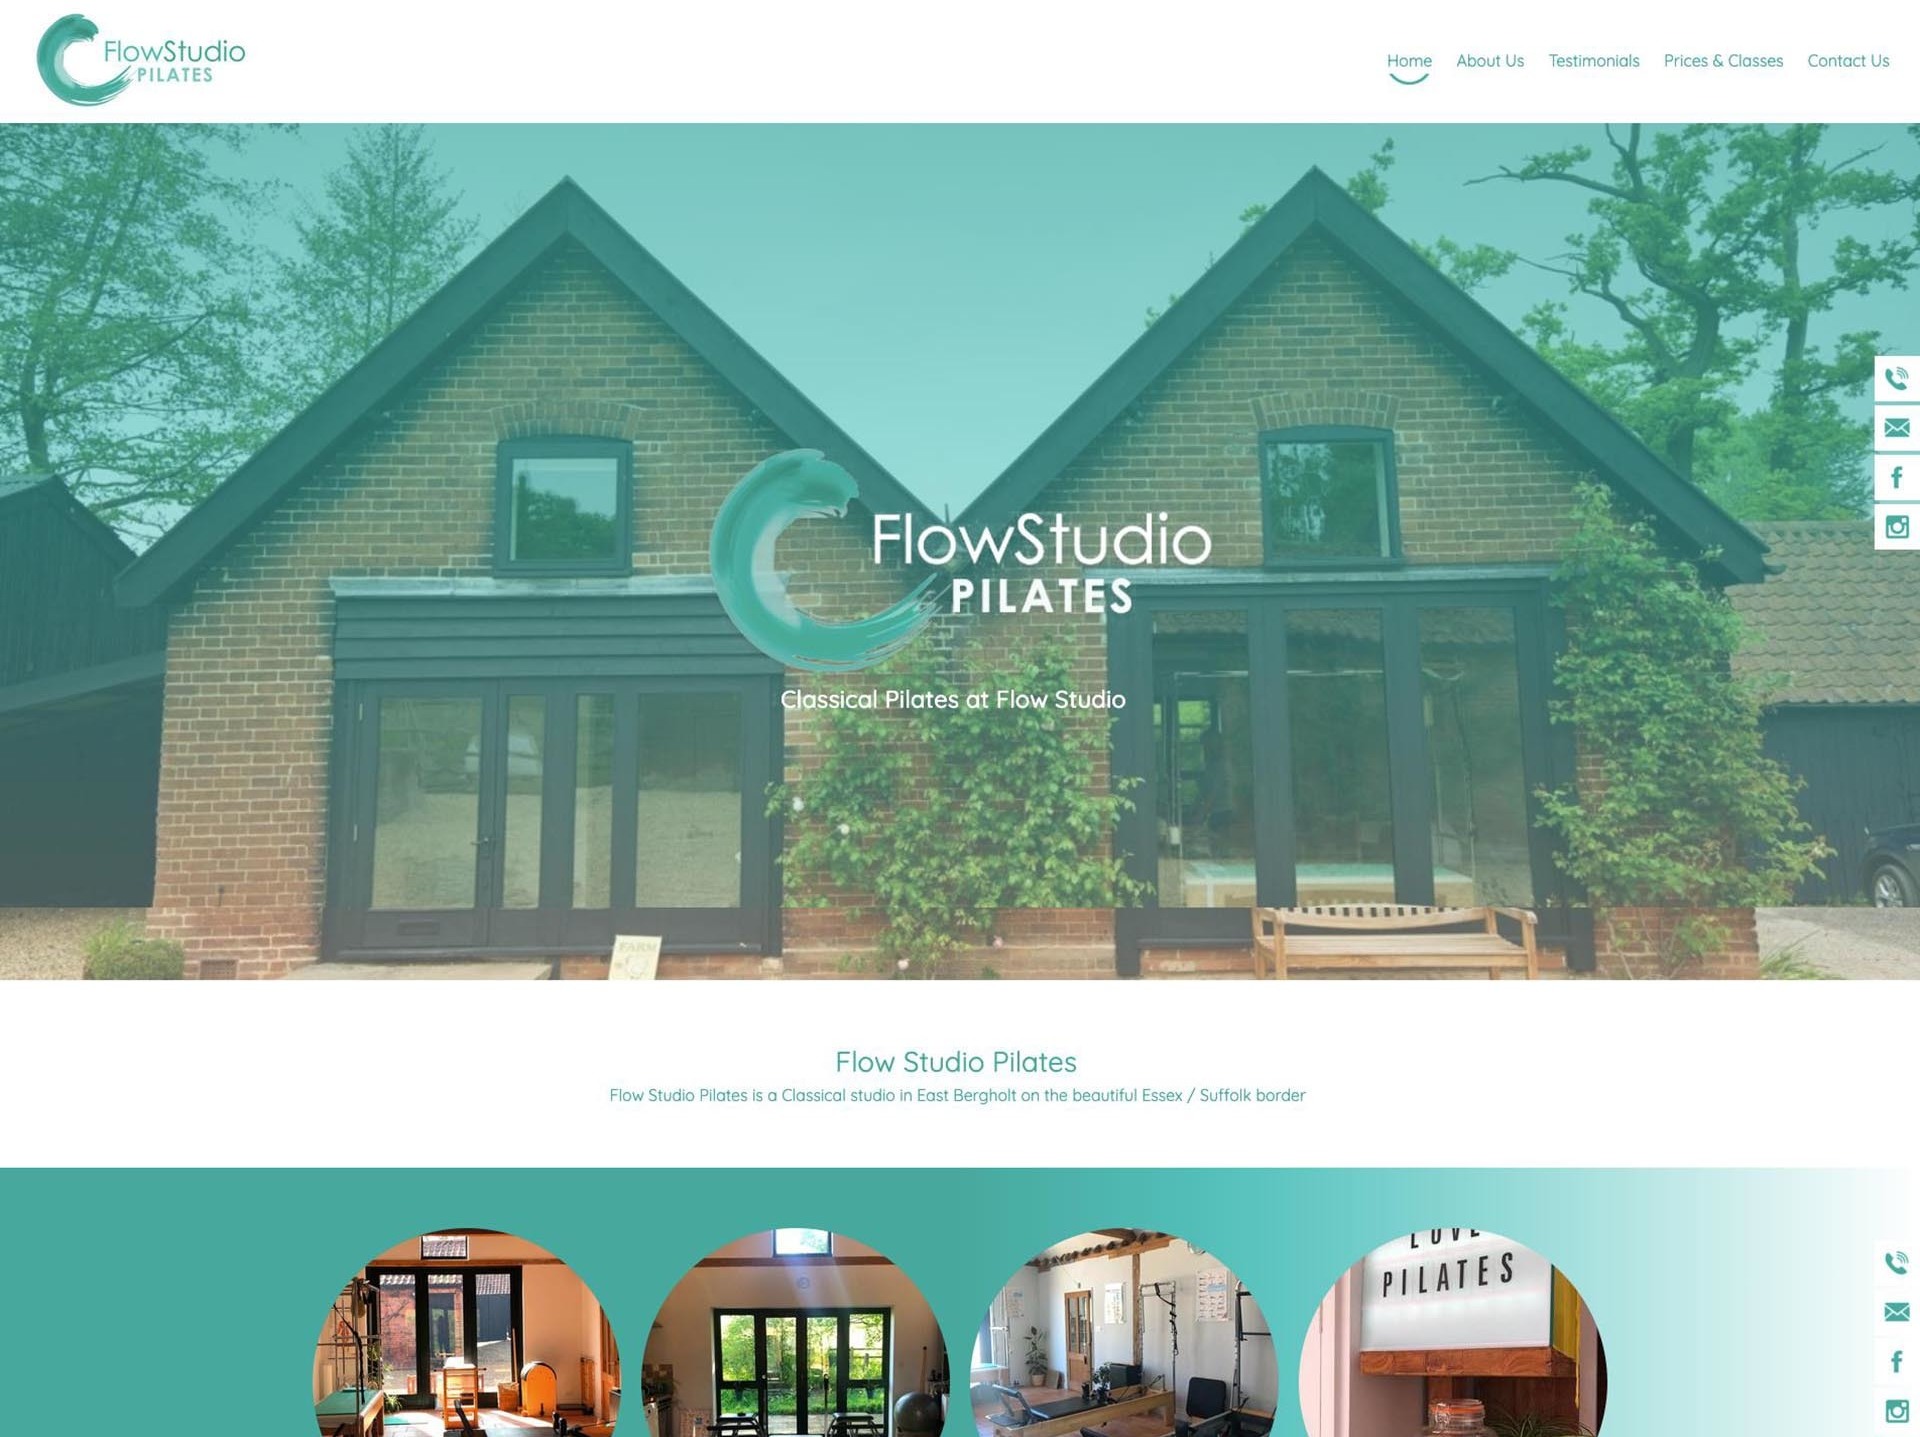 Web Design Suffolk